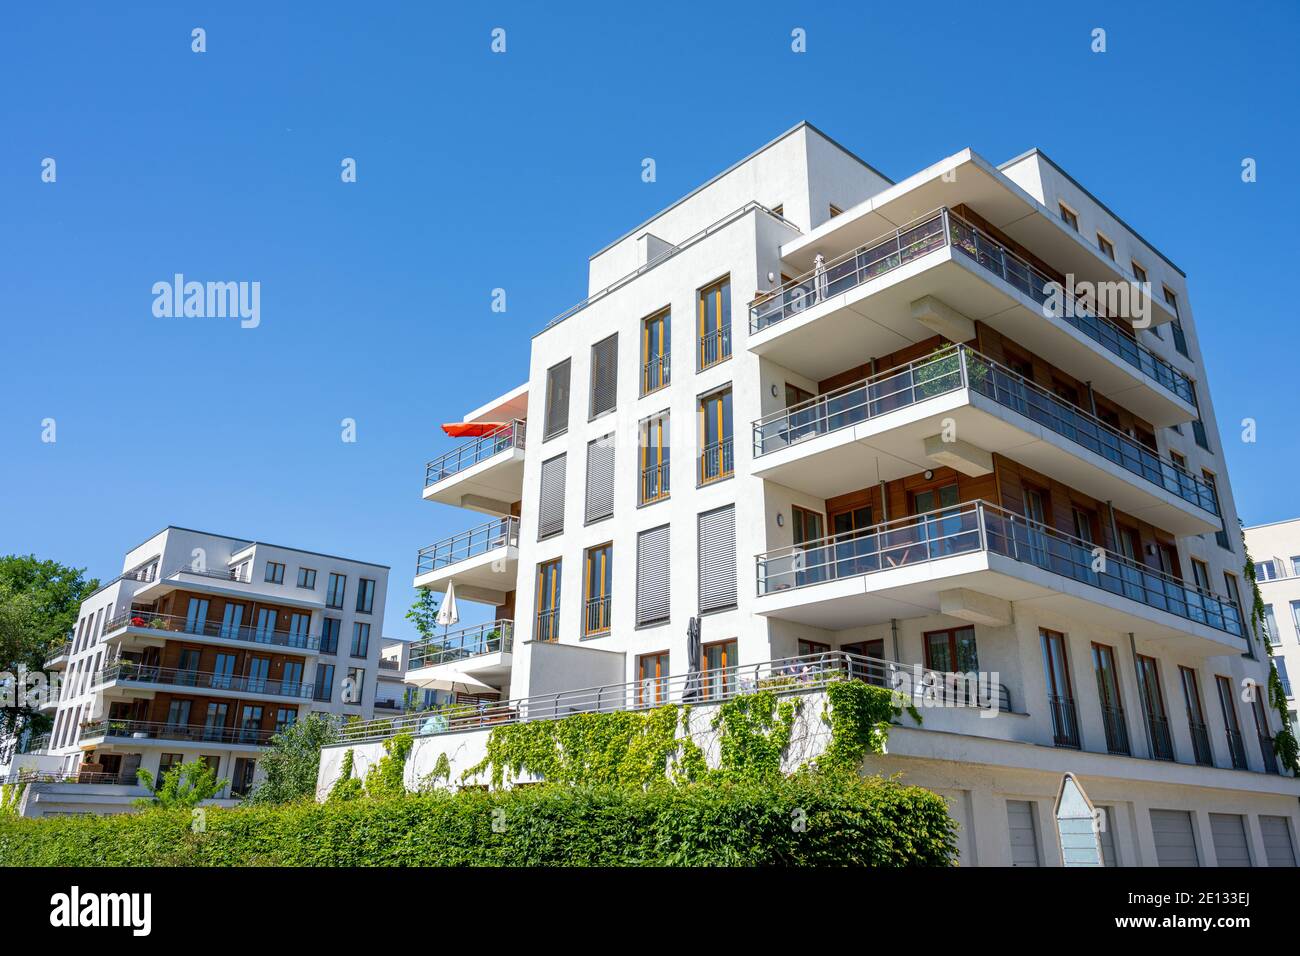 Modern apartment buiildings in Berlin, Germany Stock Photo